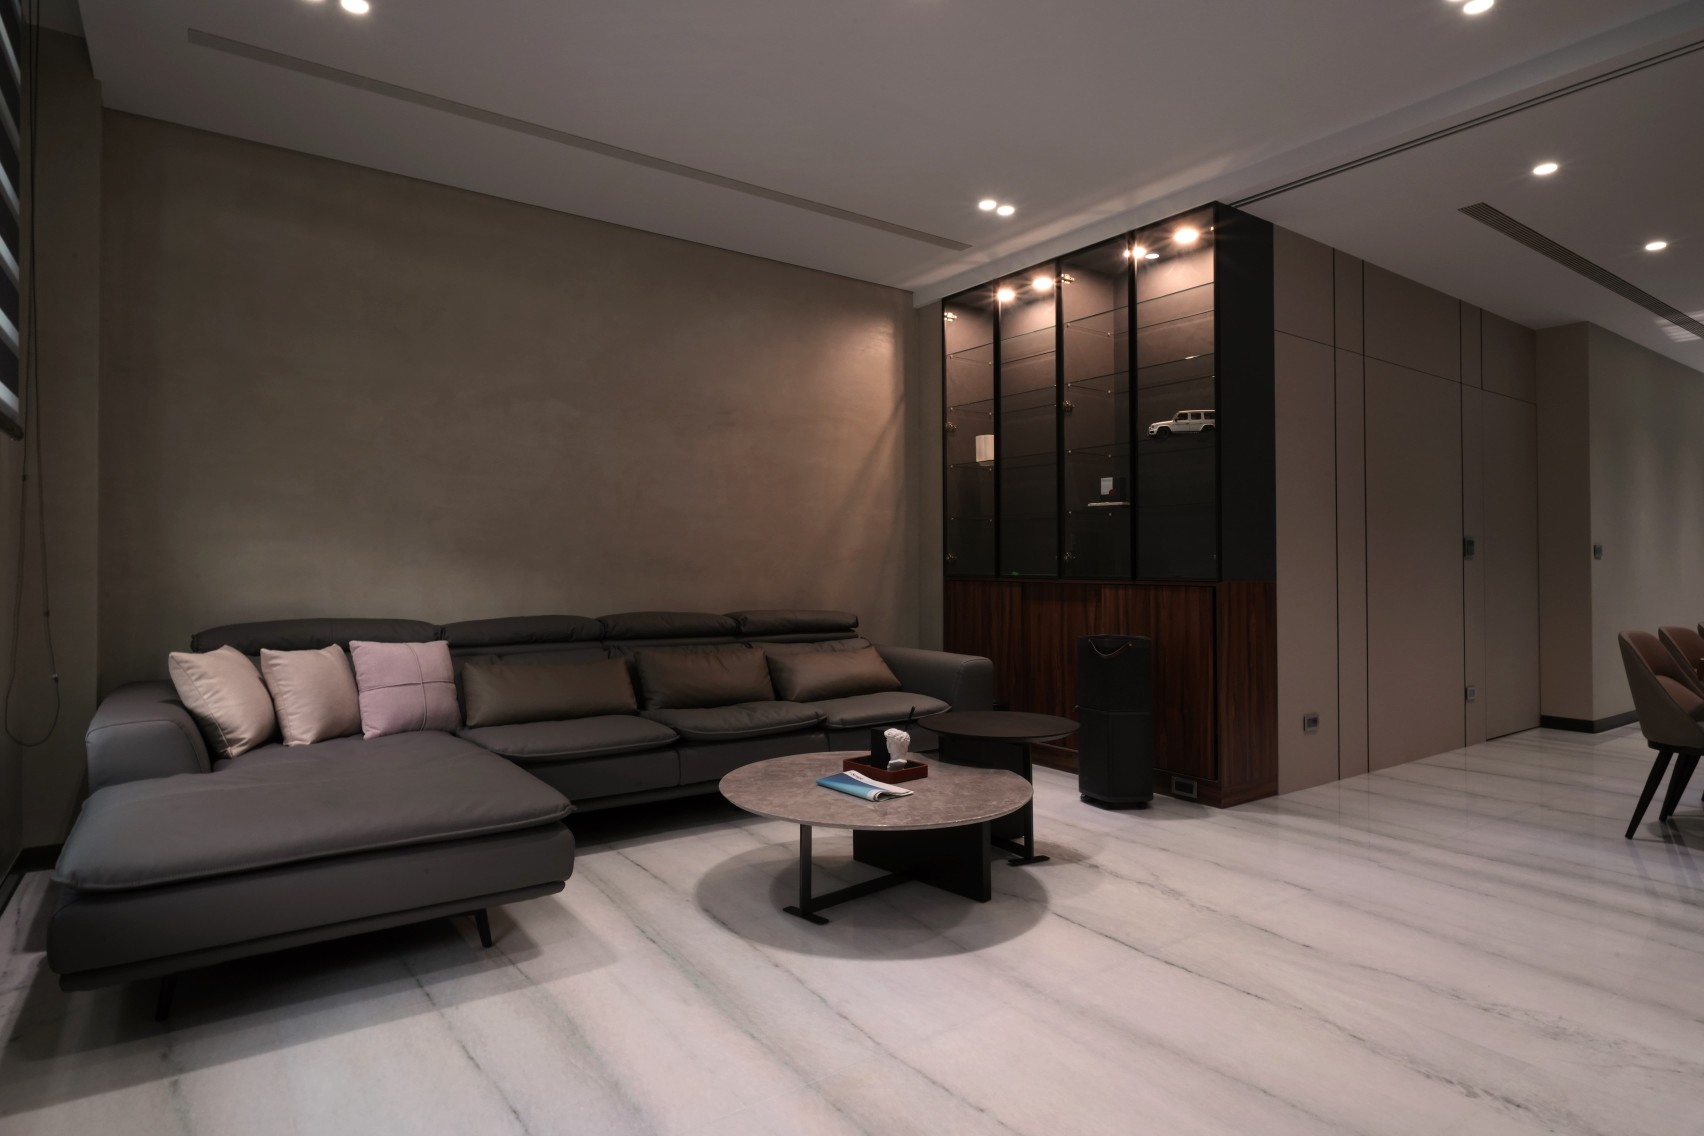 客廳牆面以低調、霧面質感的淺灰色特殊塗料作為主體視覺